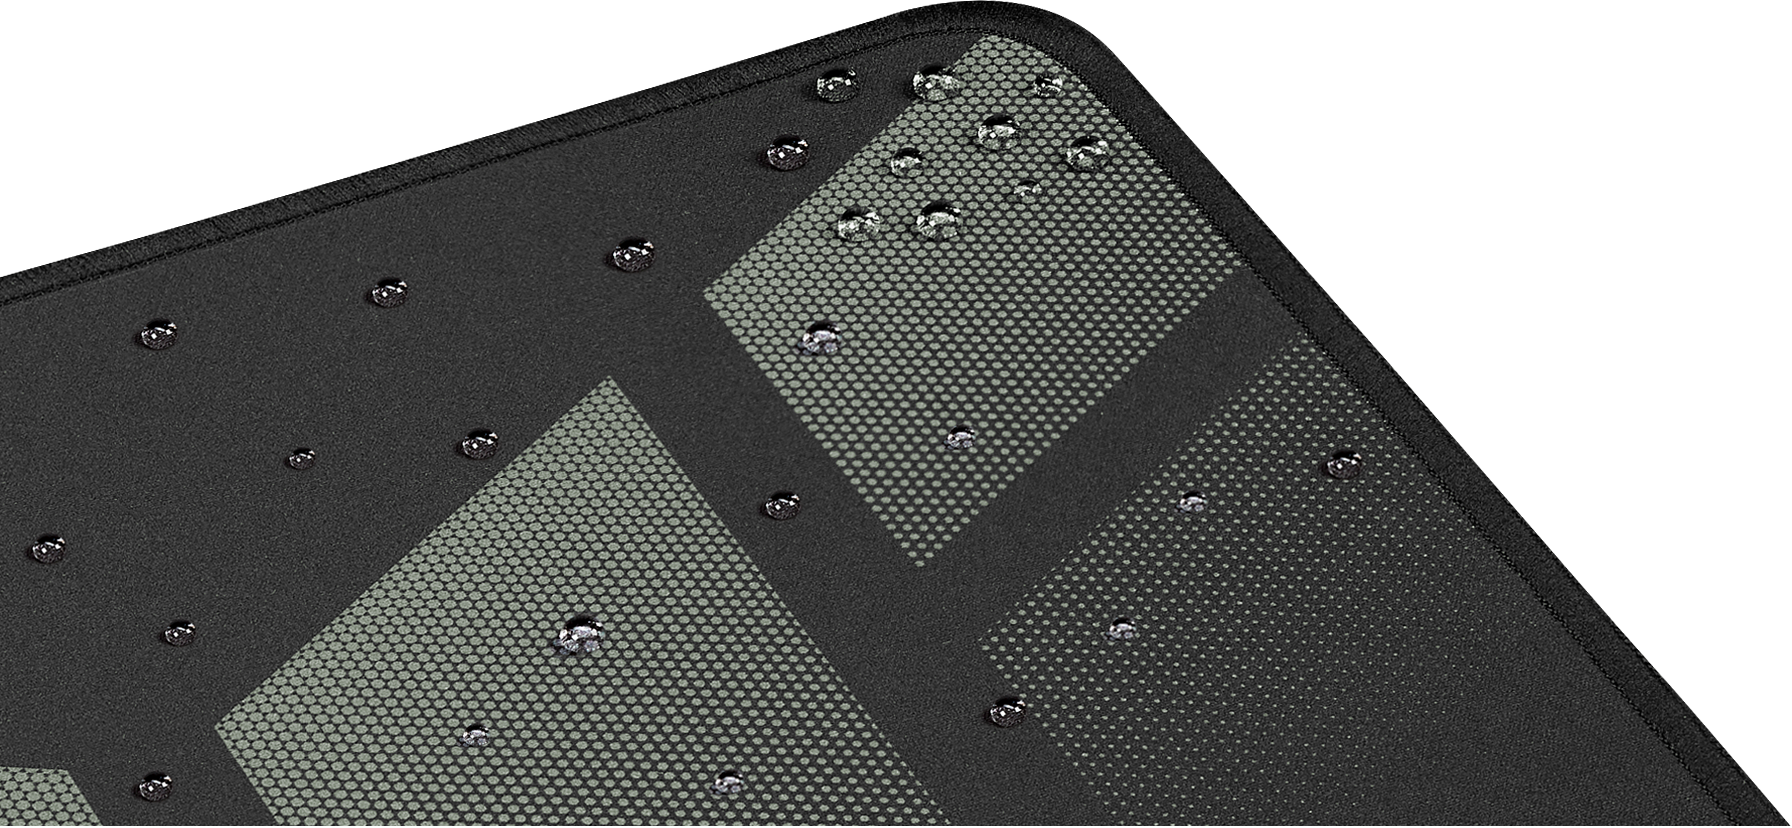 Herní podložka Asus TUF Gaming P1 je vyrobena z odolné tkaniny s inovativním nano potahem vojenské kvality, který odpuzuje vodu a vlhkost.